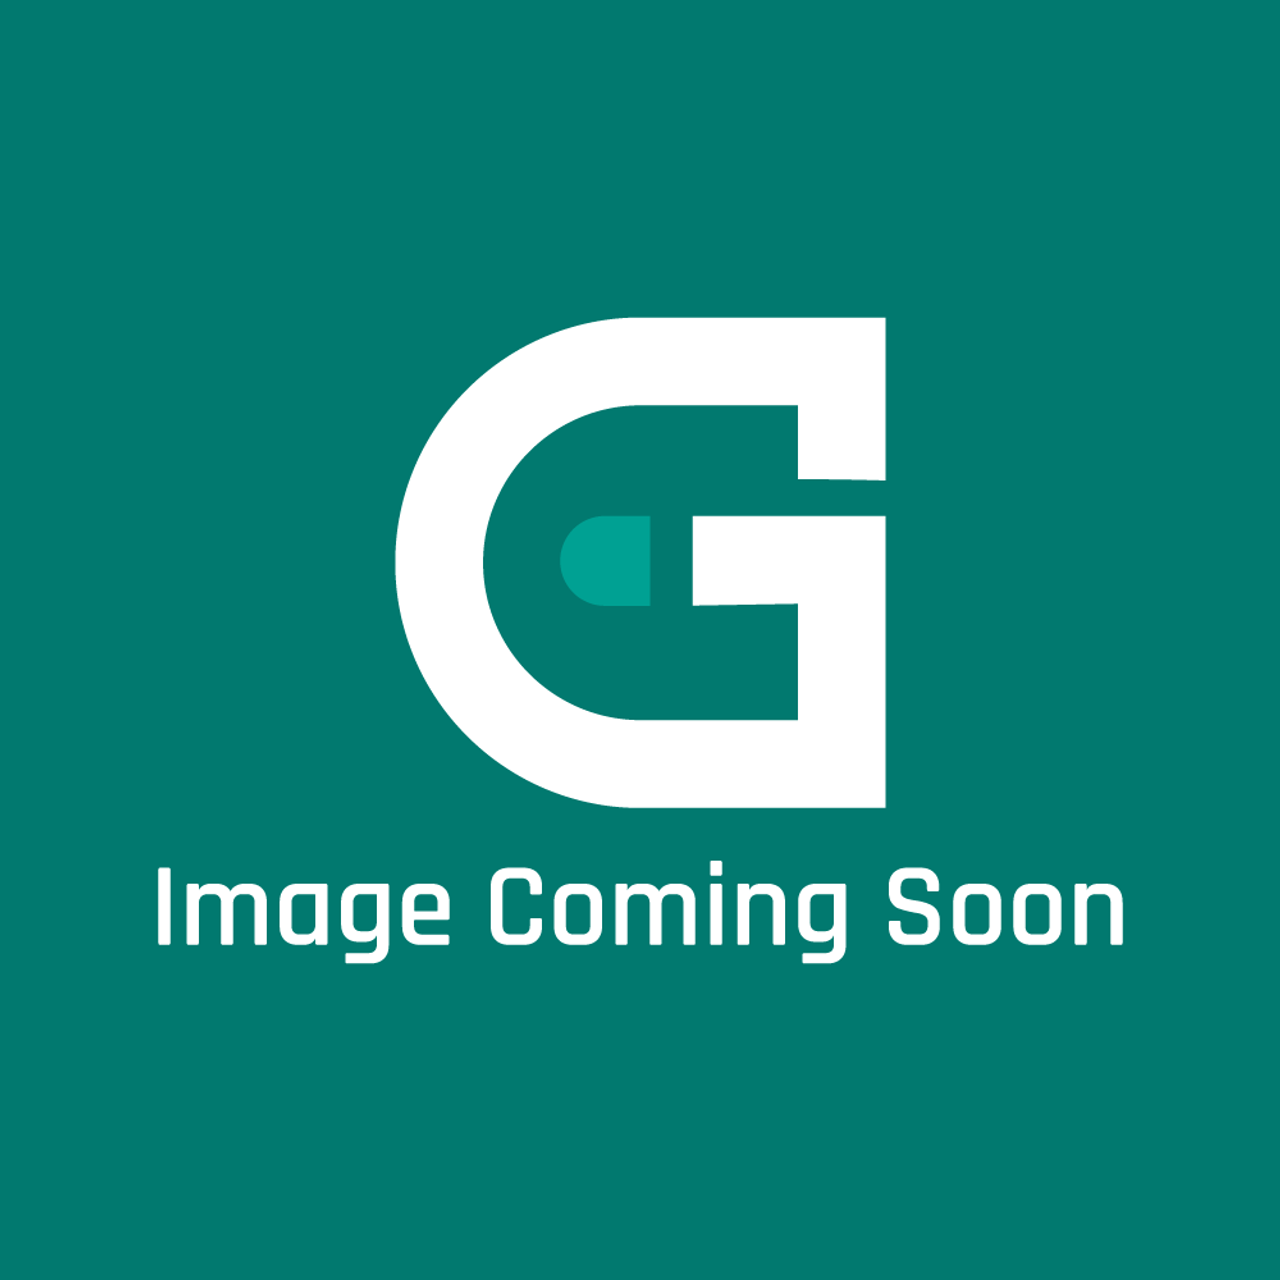 Star Mfg G5-Z4817 - Flue Divider - Image Coming Soon!